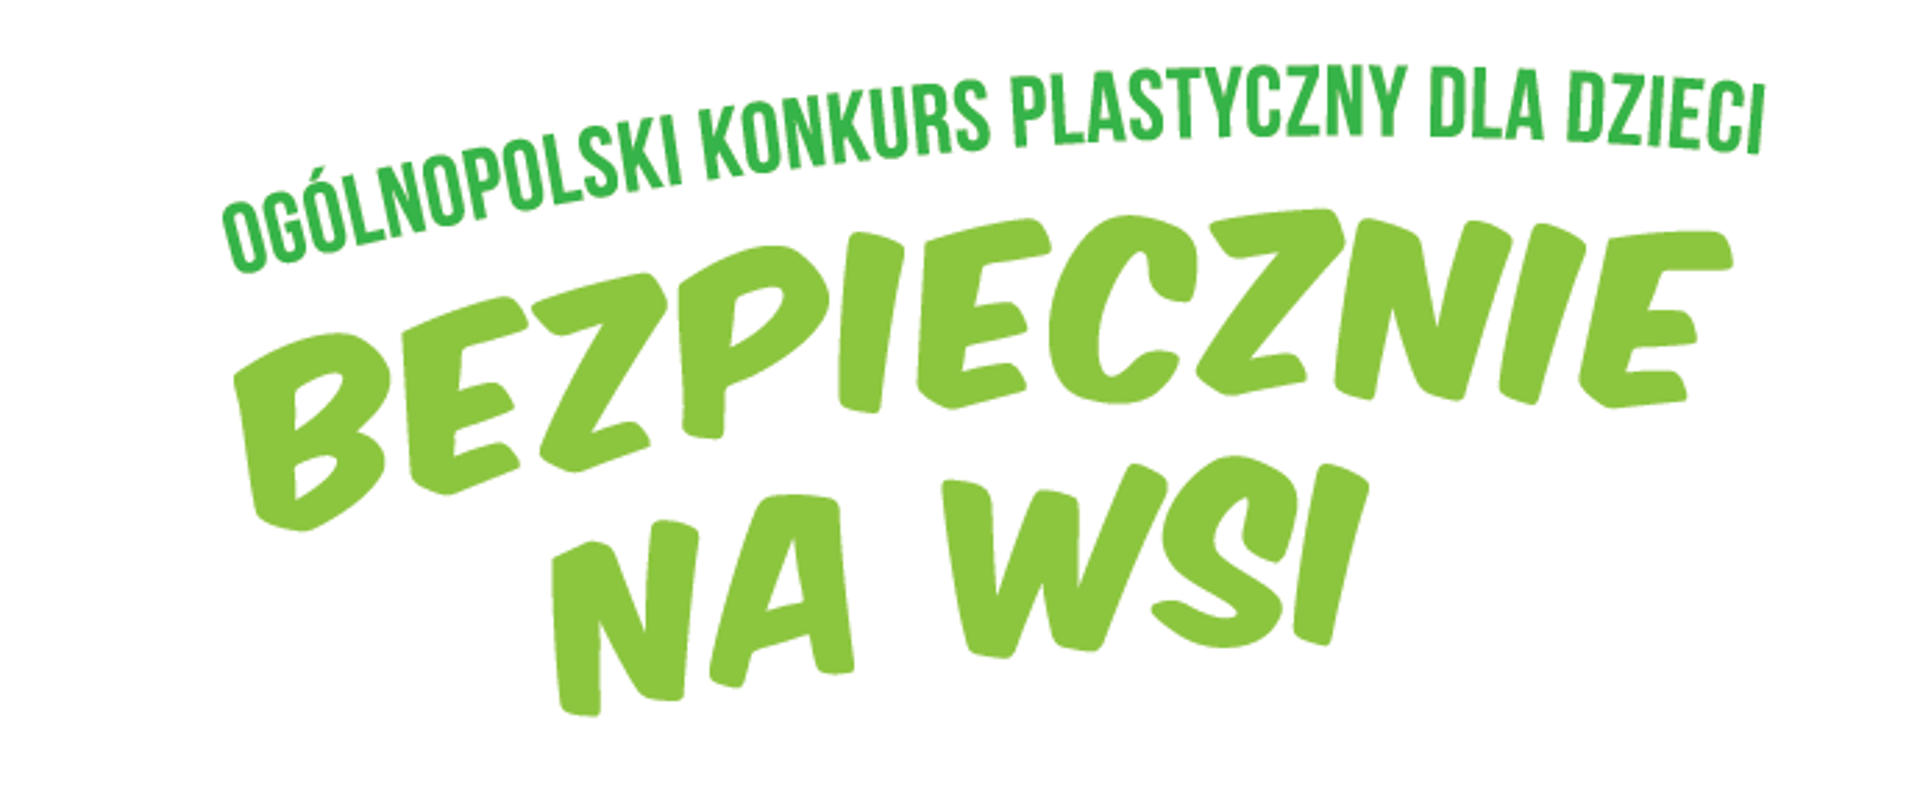 napis Ogólnopolski Konkursu Plastycznego dla Dzieci „Bezpiecznie na wsi”